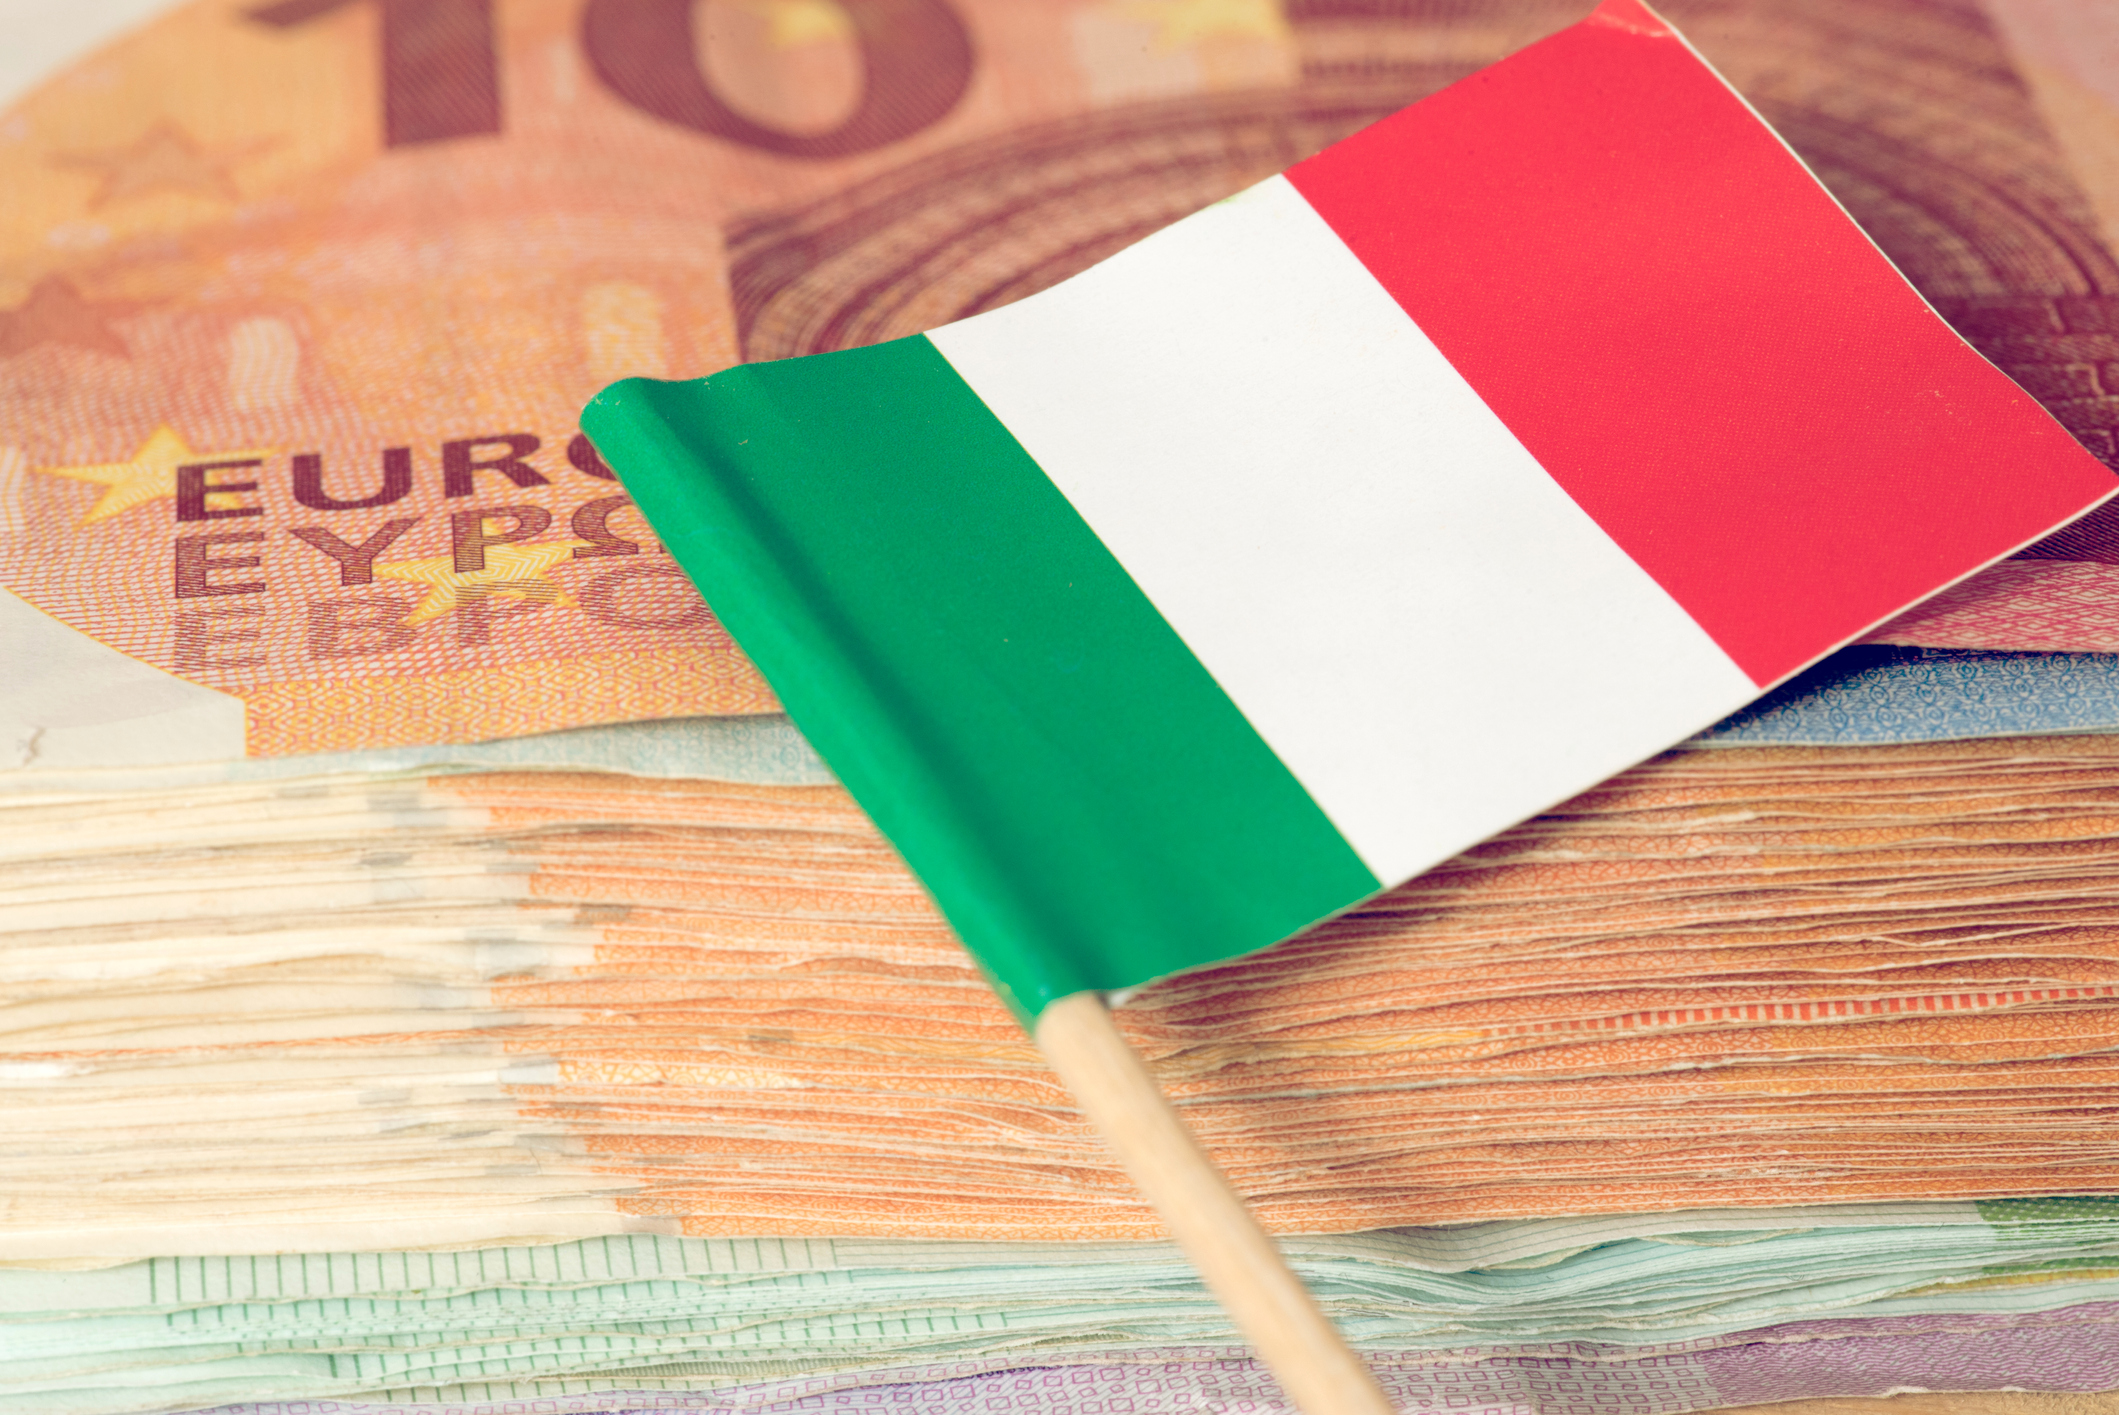 financialounge -  Amundi Andrea Enria banche italiane Banco Bpm Carige fusioni Mas risiko spread titoli di stato voto